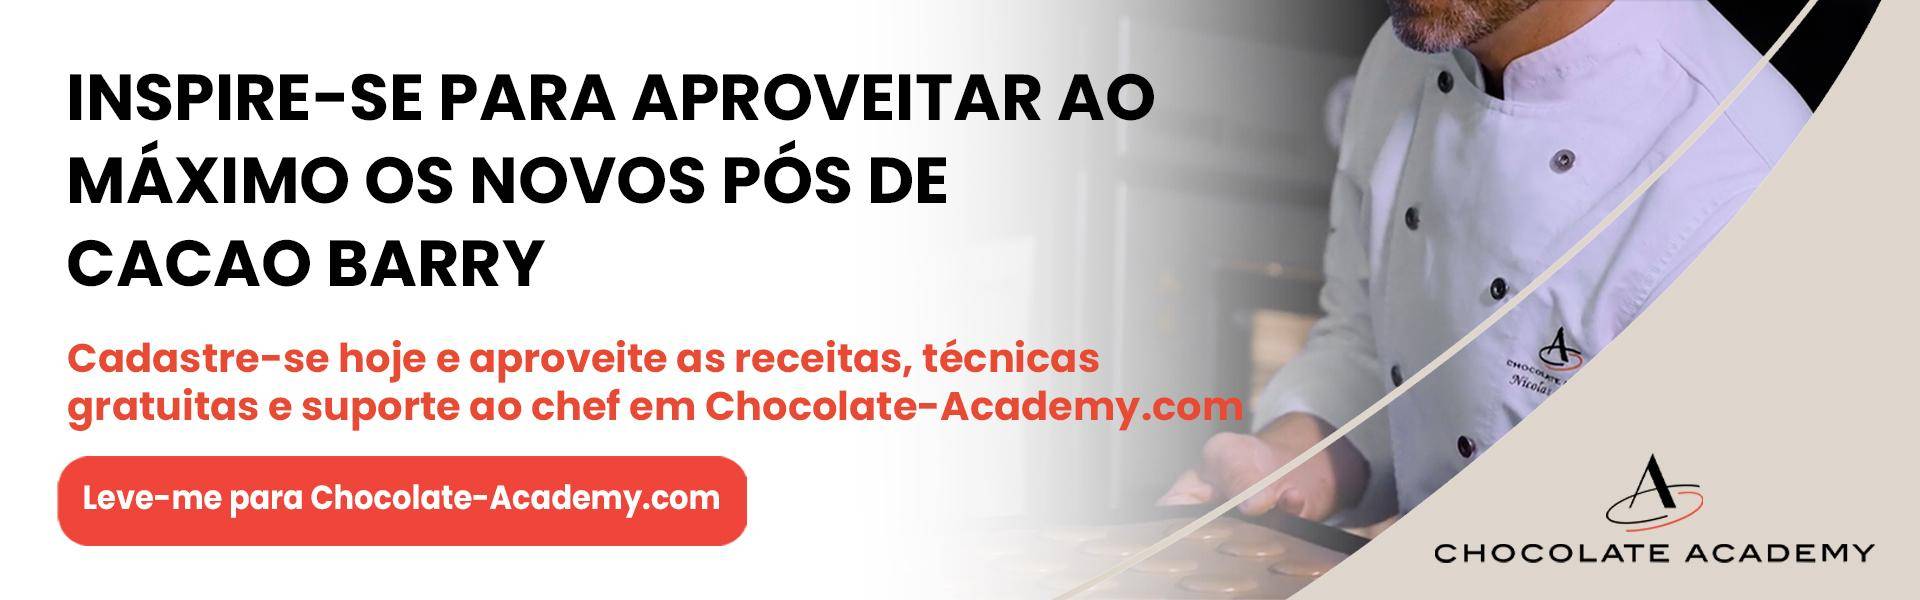 visite chocolate-academy.com